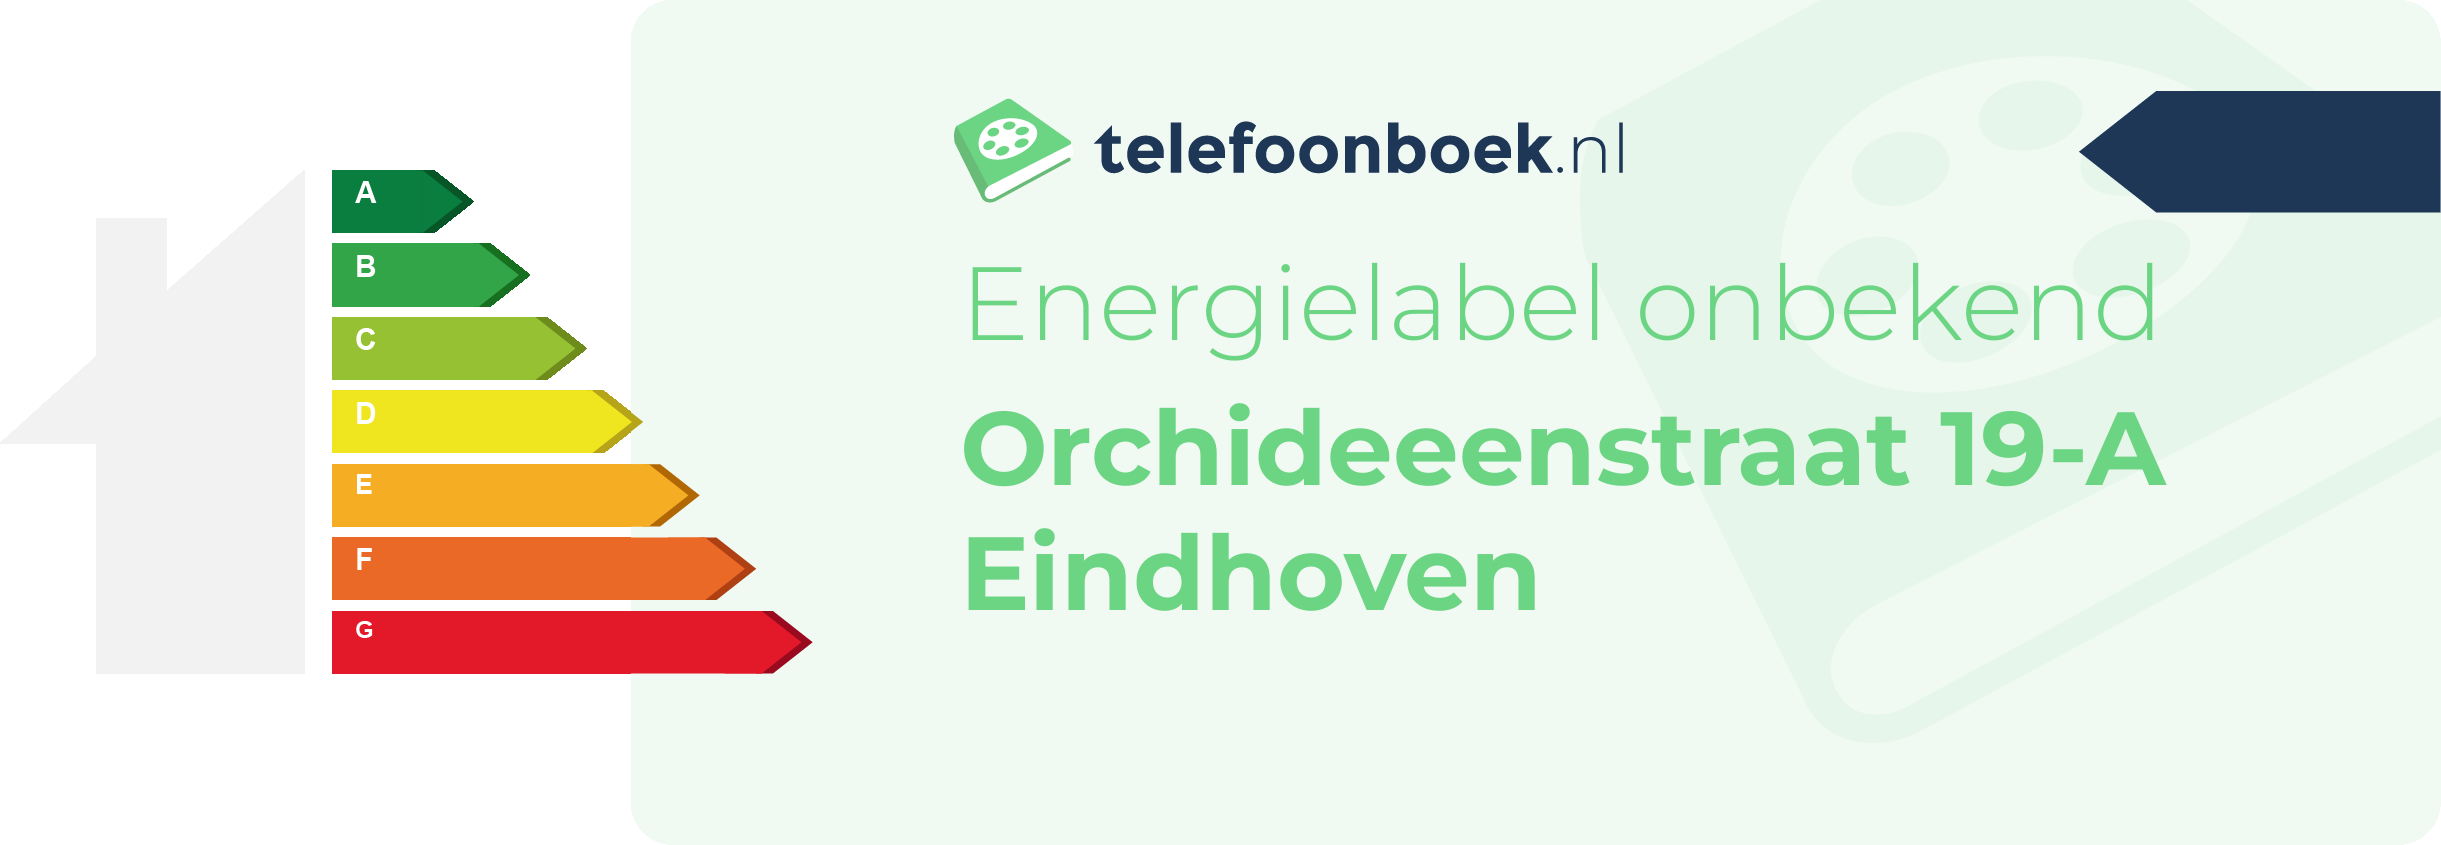 Energielabel Orchideeenstraat 19-A Eindhoven